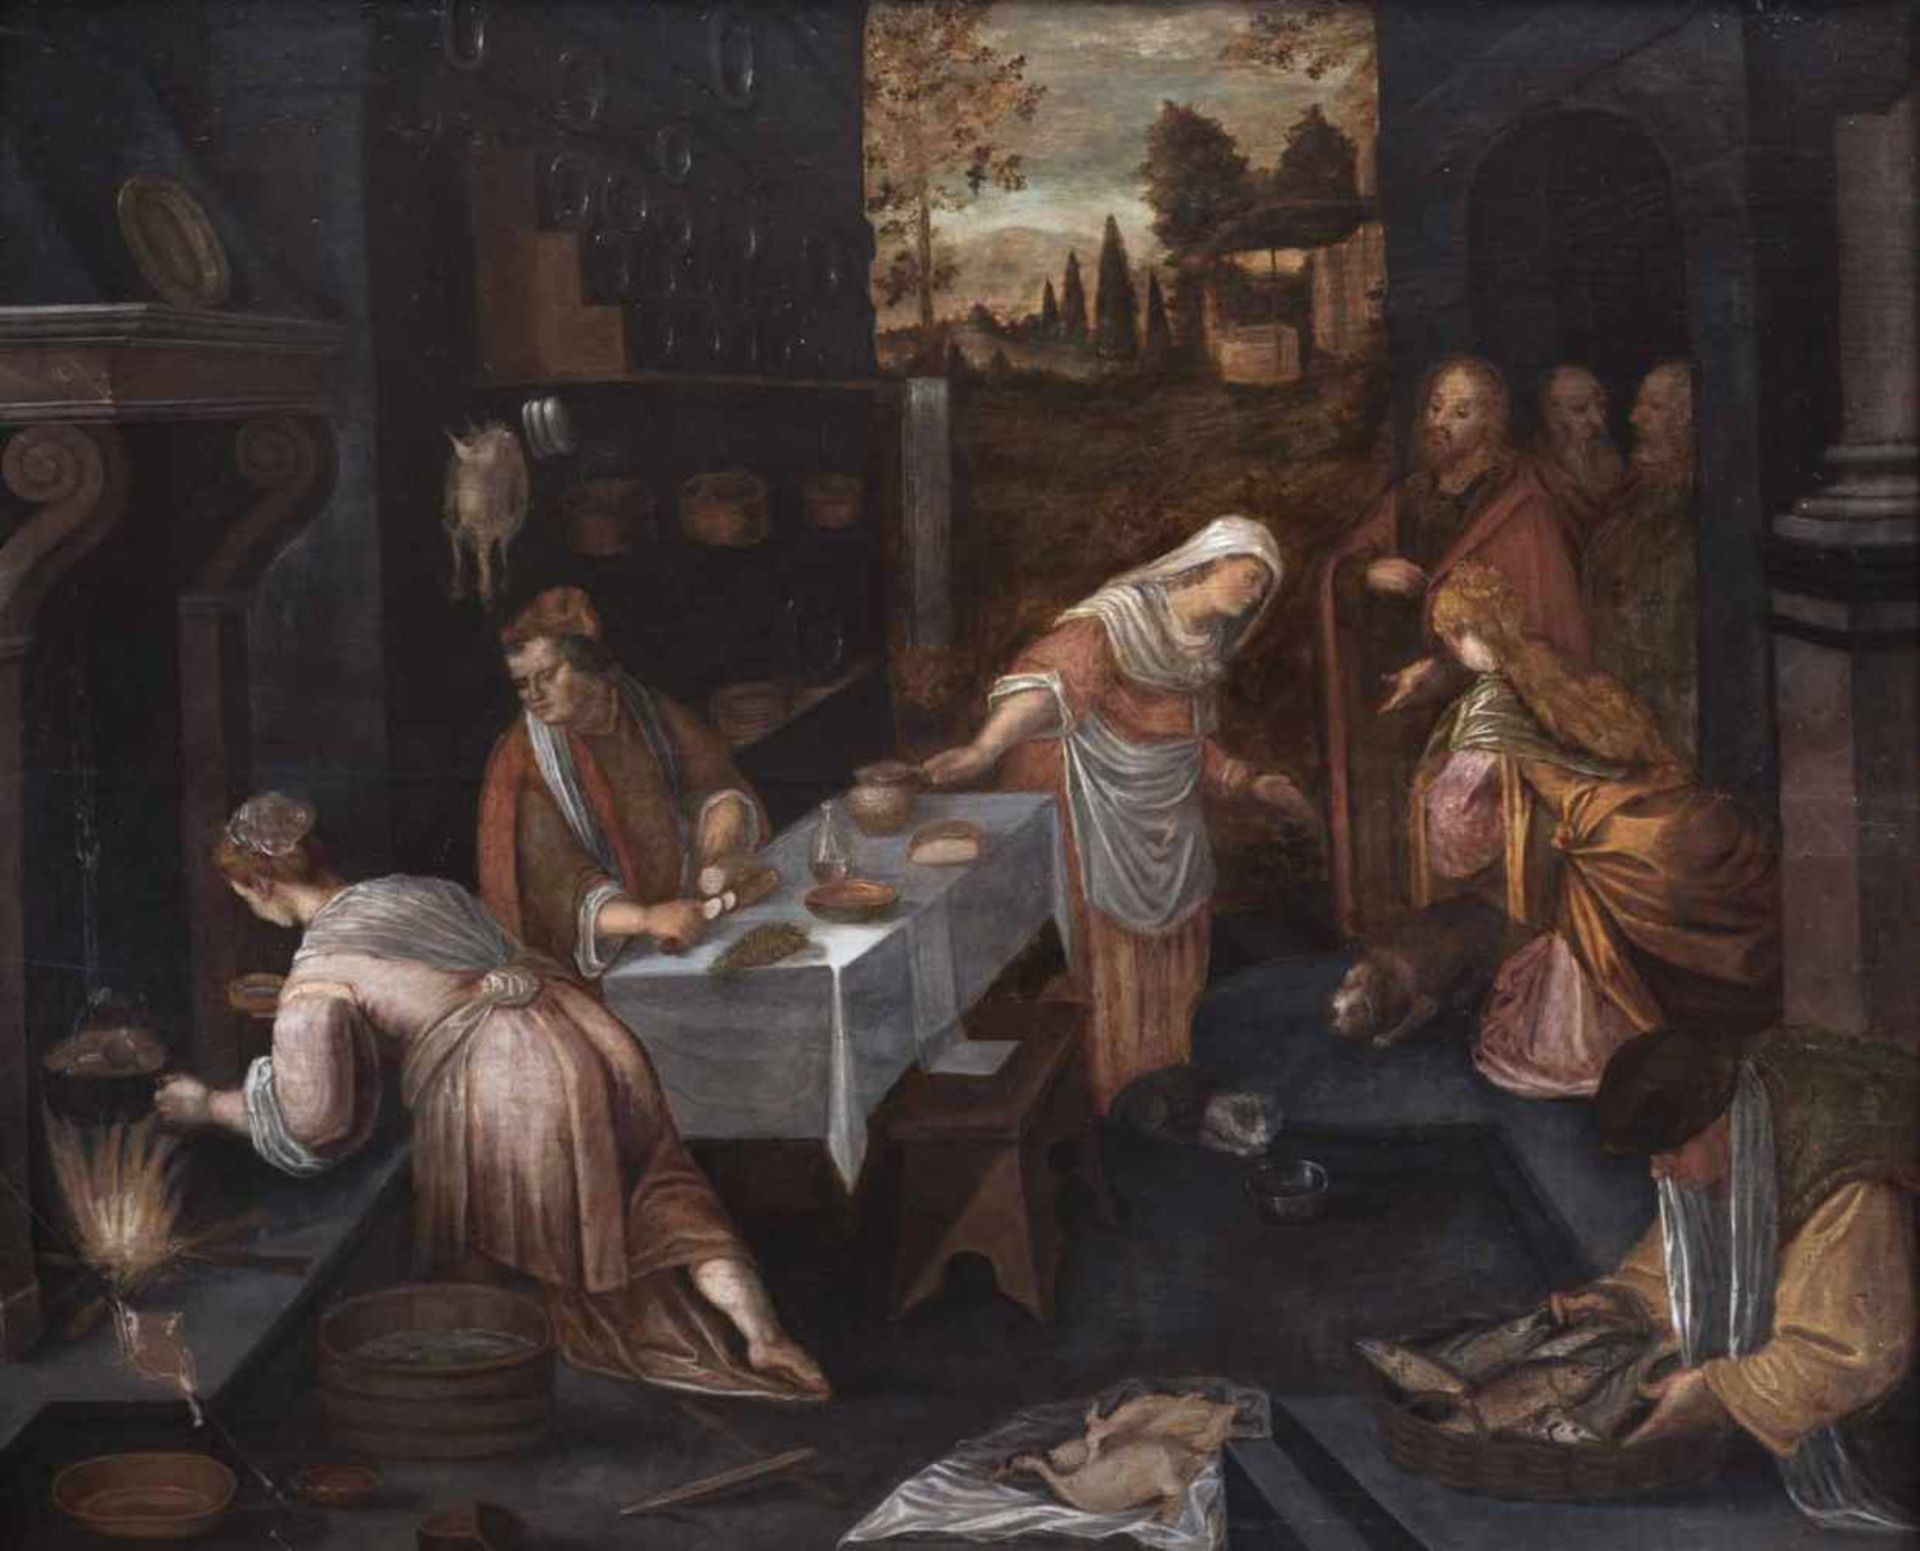 Bassano, Jacopo (nach)Bassano um 1510 - 159295 x 117 cmChristus im Haus von Maria und Martha. Öl/